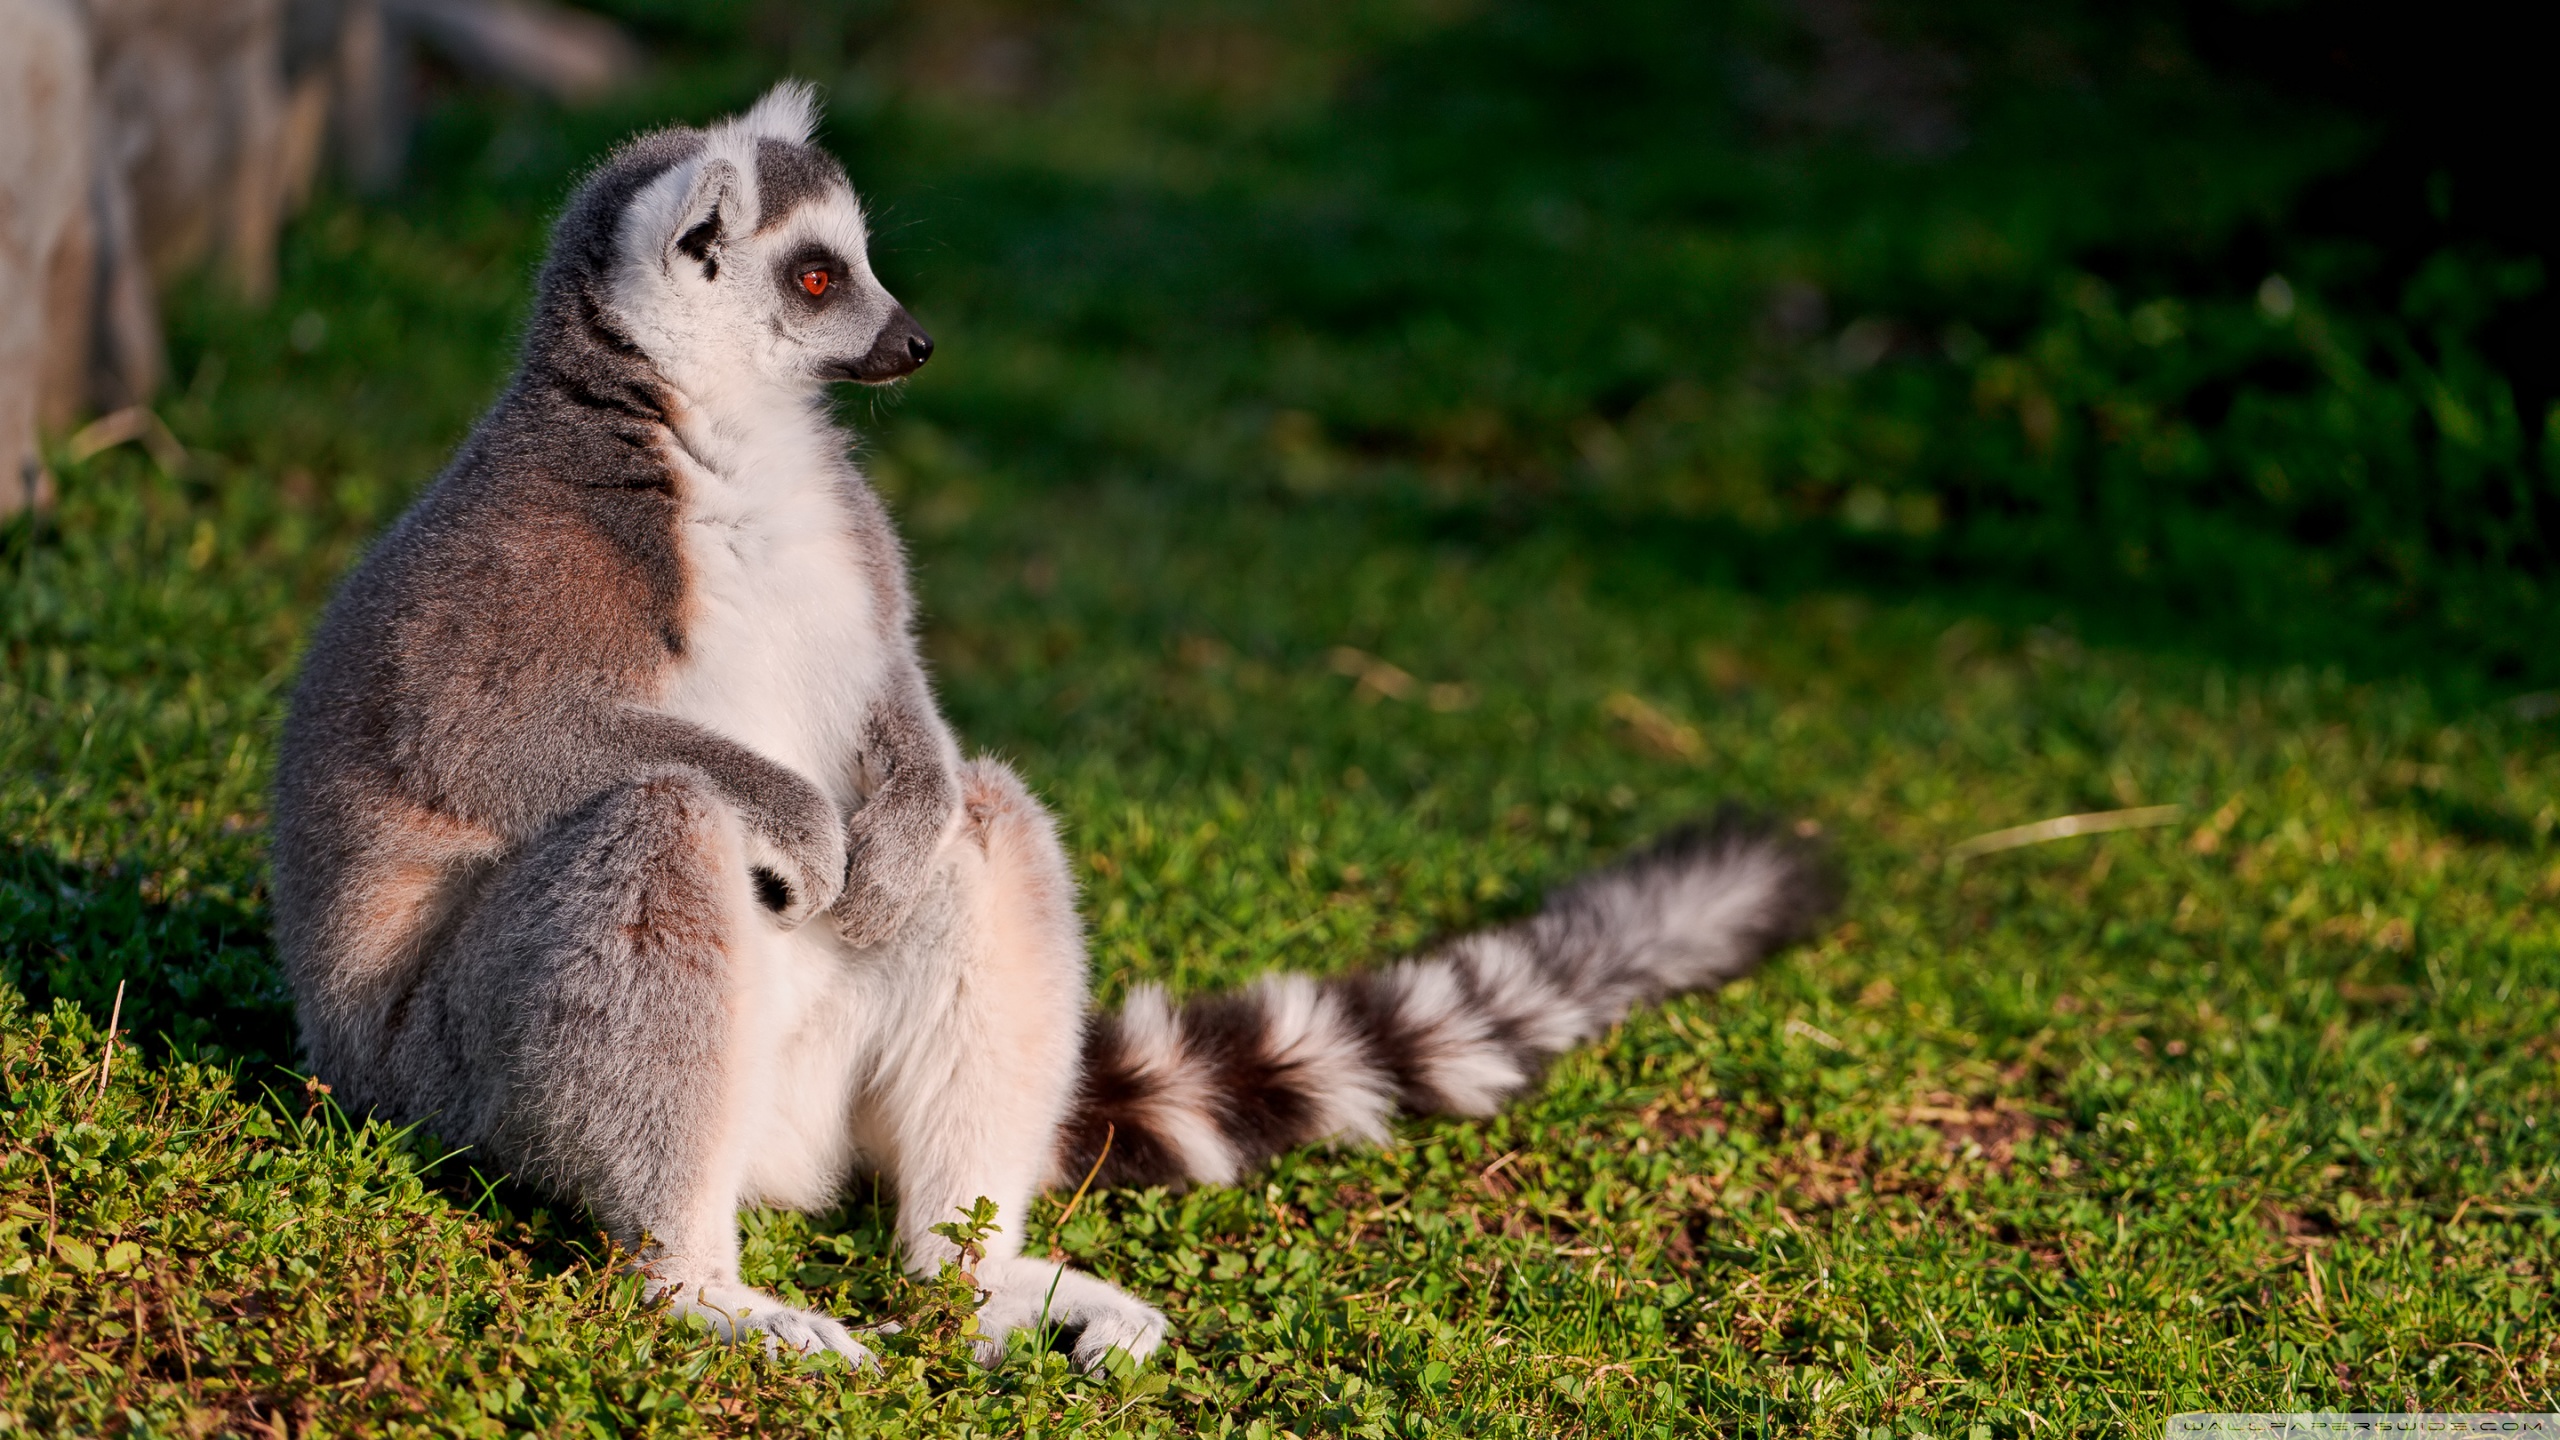 Free download wallpaper Animal, Lemur on your PC desktop